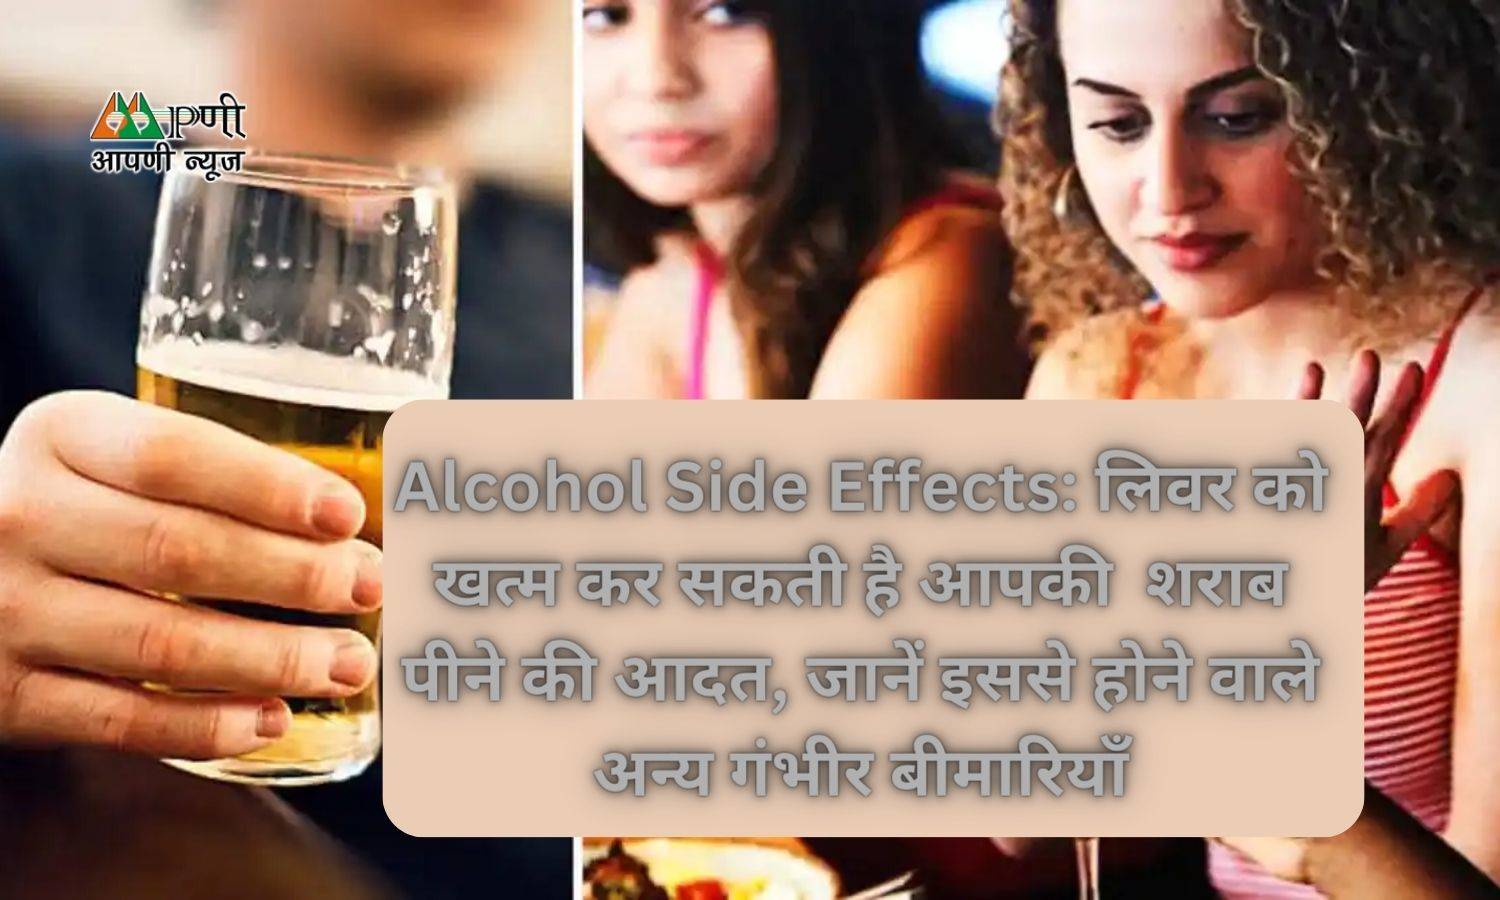 Alcohol Side Effects: लिवर को खत्म कर सकती है आपकी  शराब पीने की आदत, जानें इससे होने वाले अन्य गंभीर बीमारियाँ